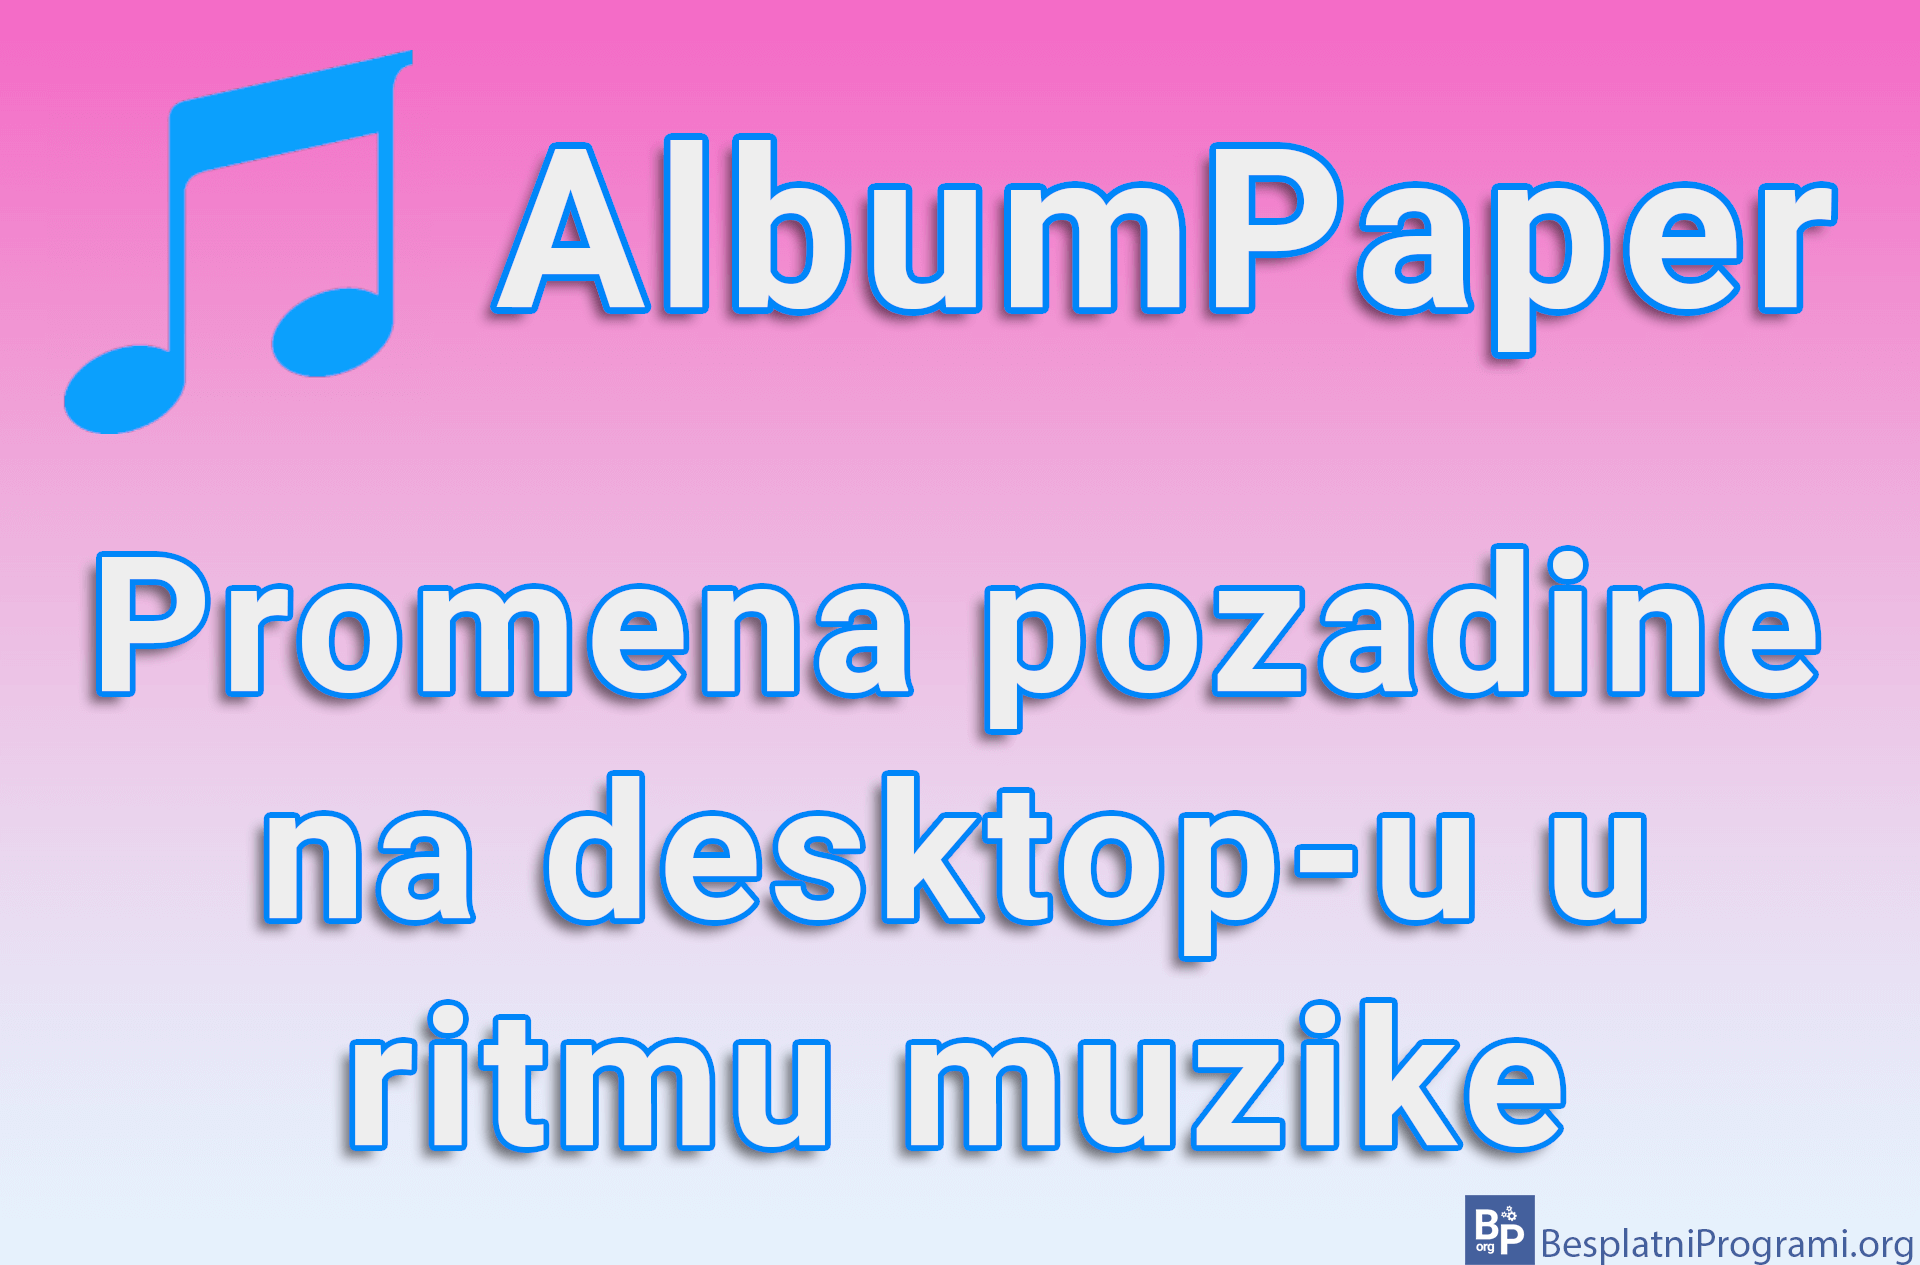 AlbumPaper - Promena pozadine na desktop-u u ritmu muzike